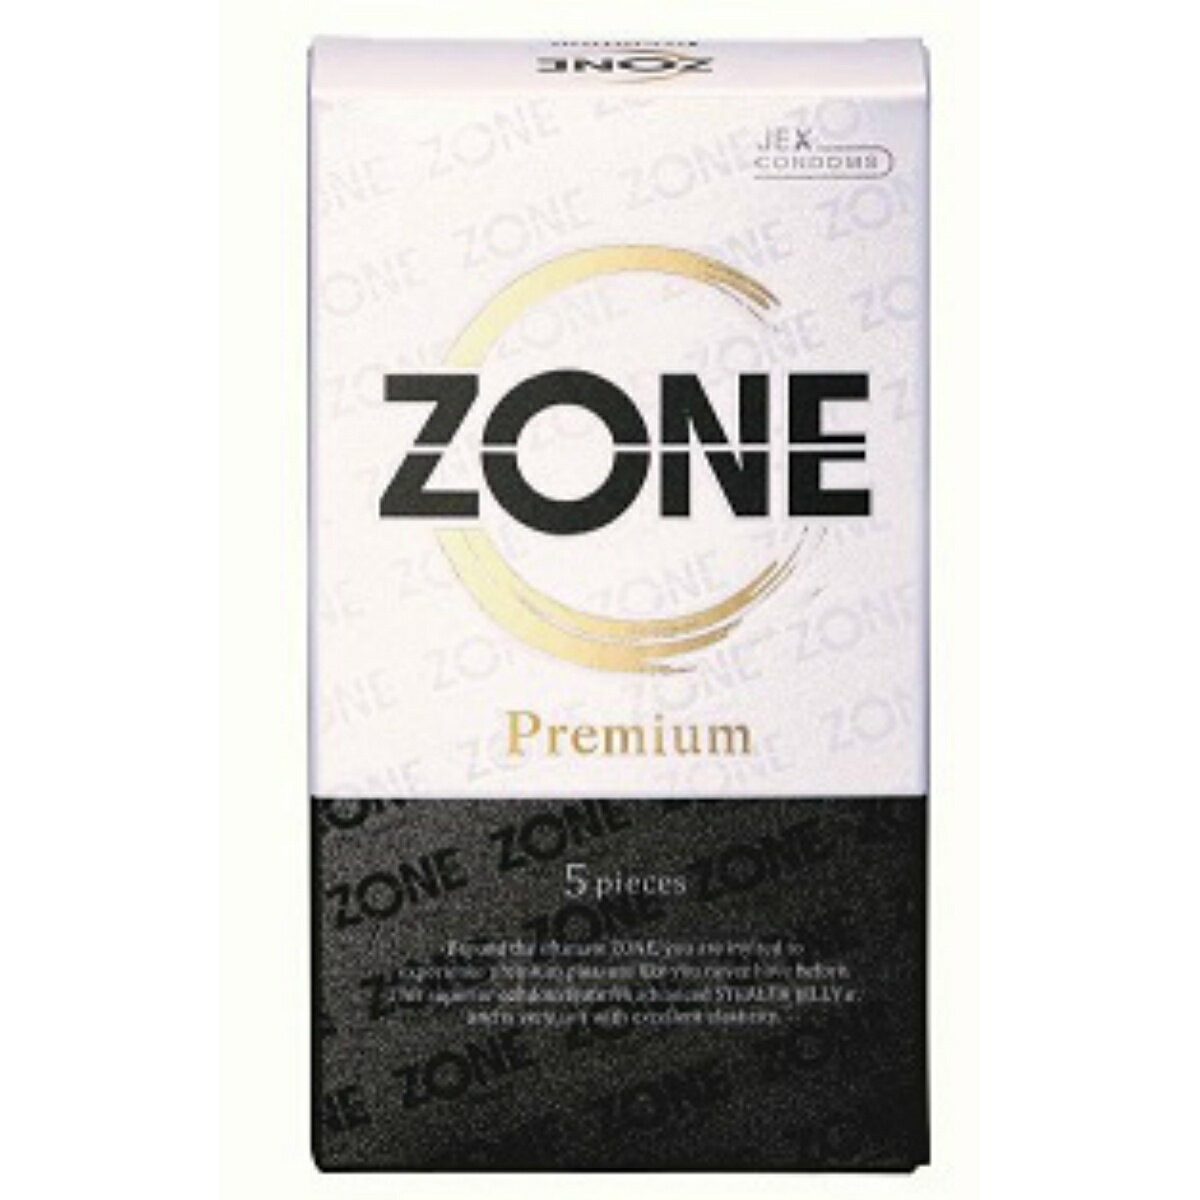 【送料込 まとめ買い×7点セット】ジェクス ZONE Premium ゾーンプレミアム 5pieces